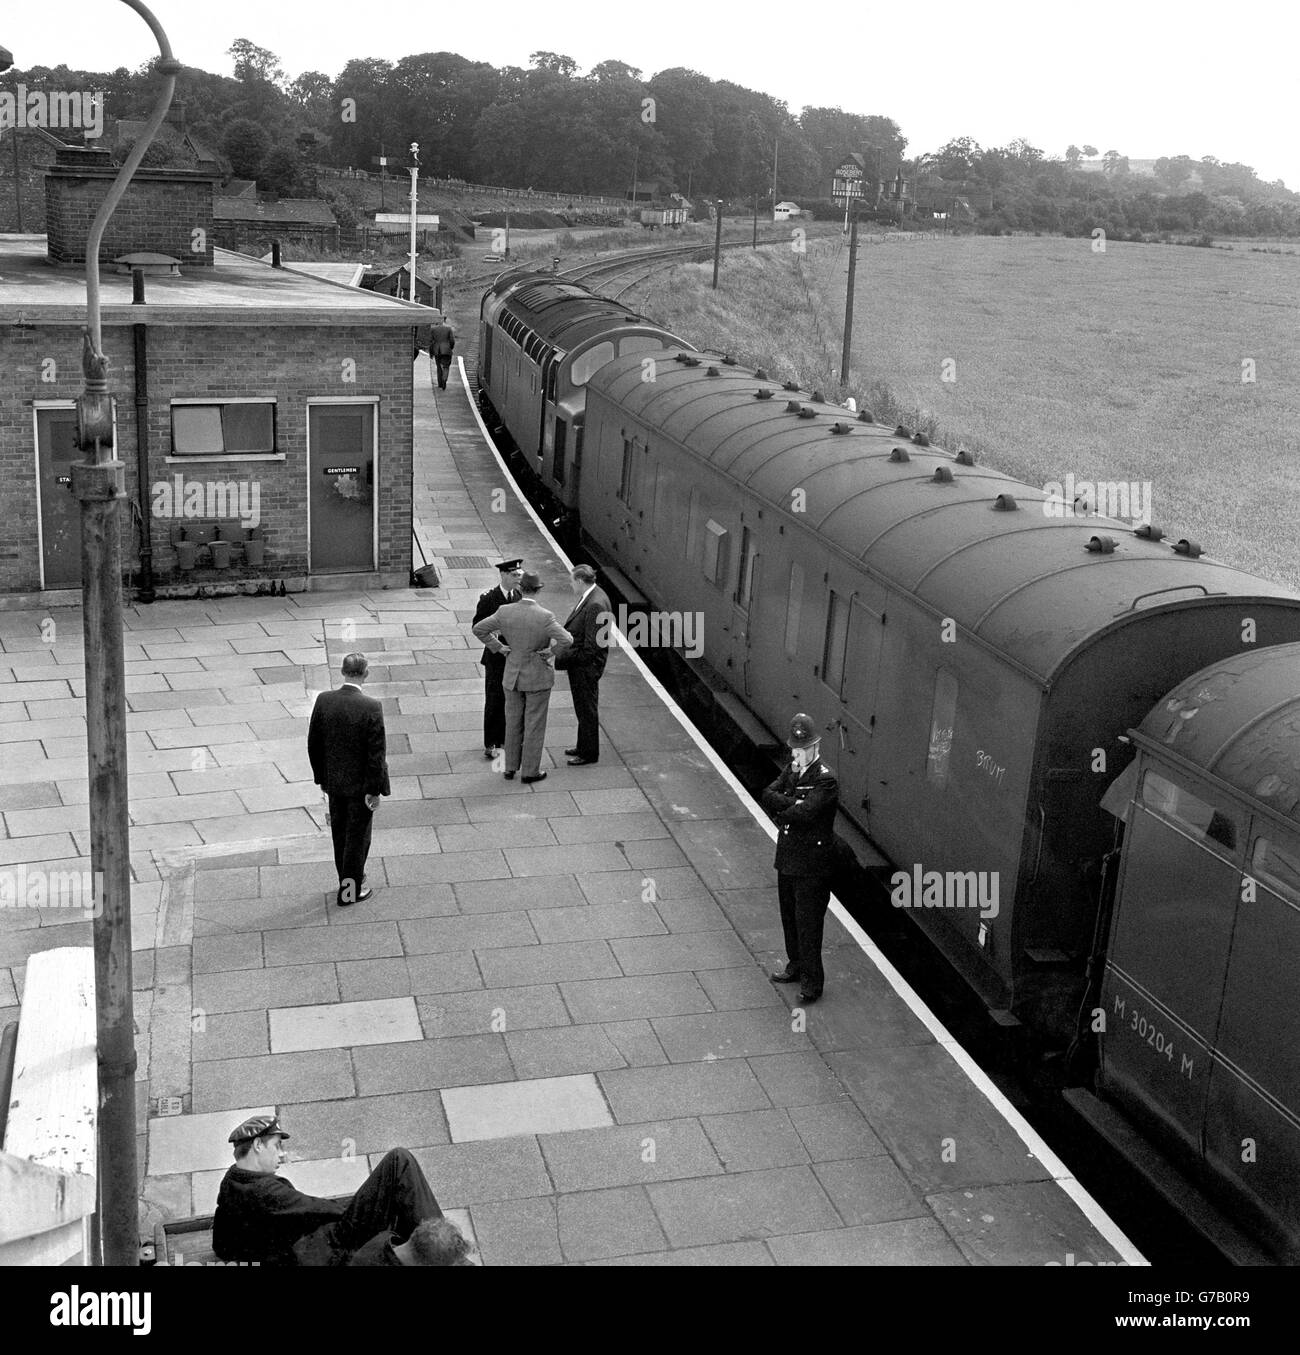 Gli allenatori del treno hanno coinvolto 2.5 milioni di rapine per posta - la "Grande rapina dei treni" - sotto la guardia di polizia alla stazione di Cheddington, Buckinghamshire, nell'agosto 1963. Foto Stock